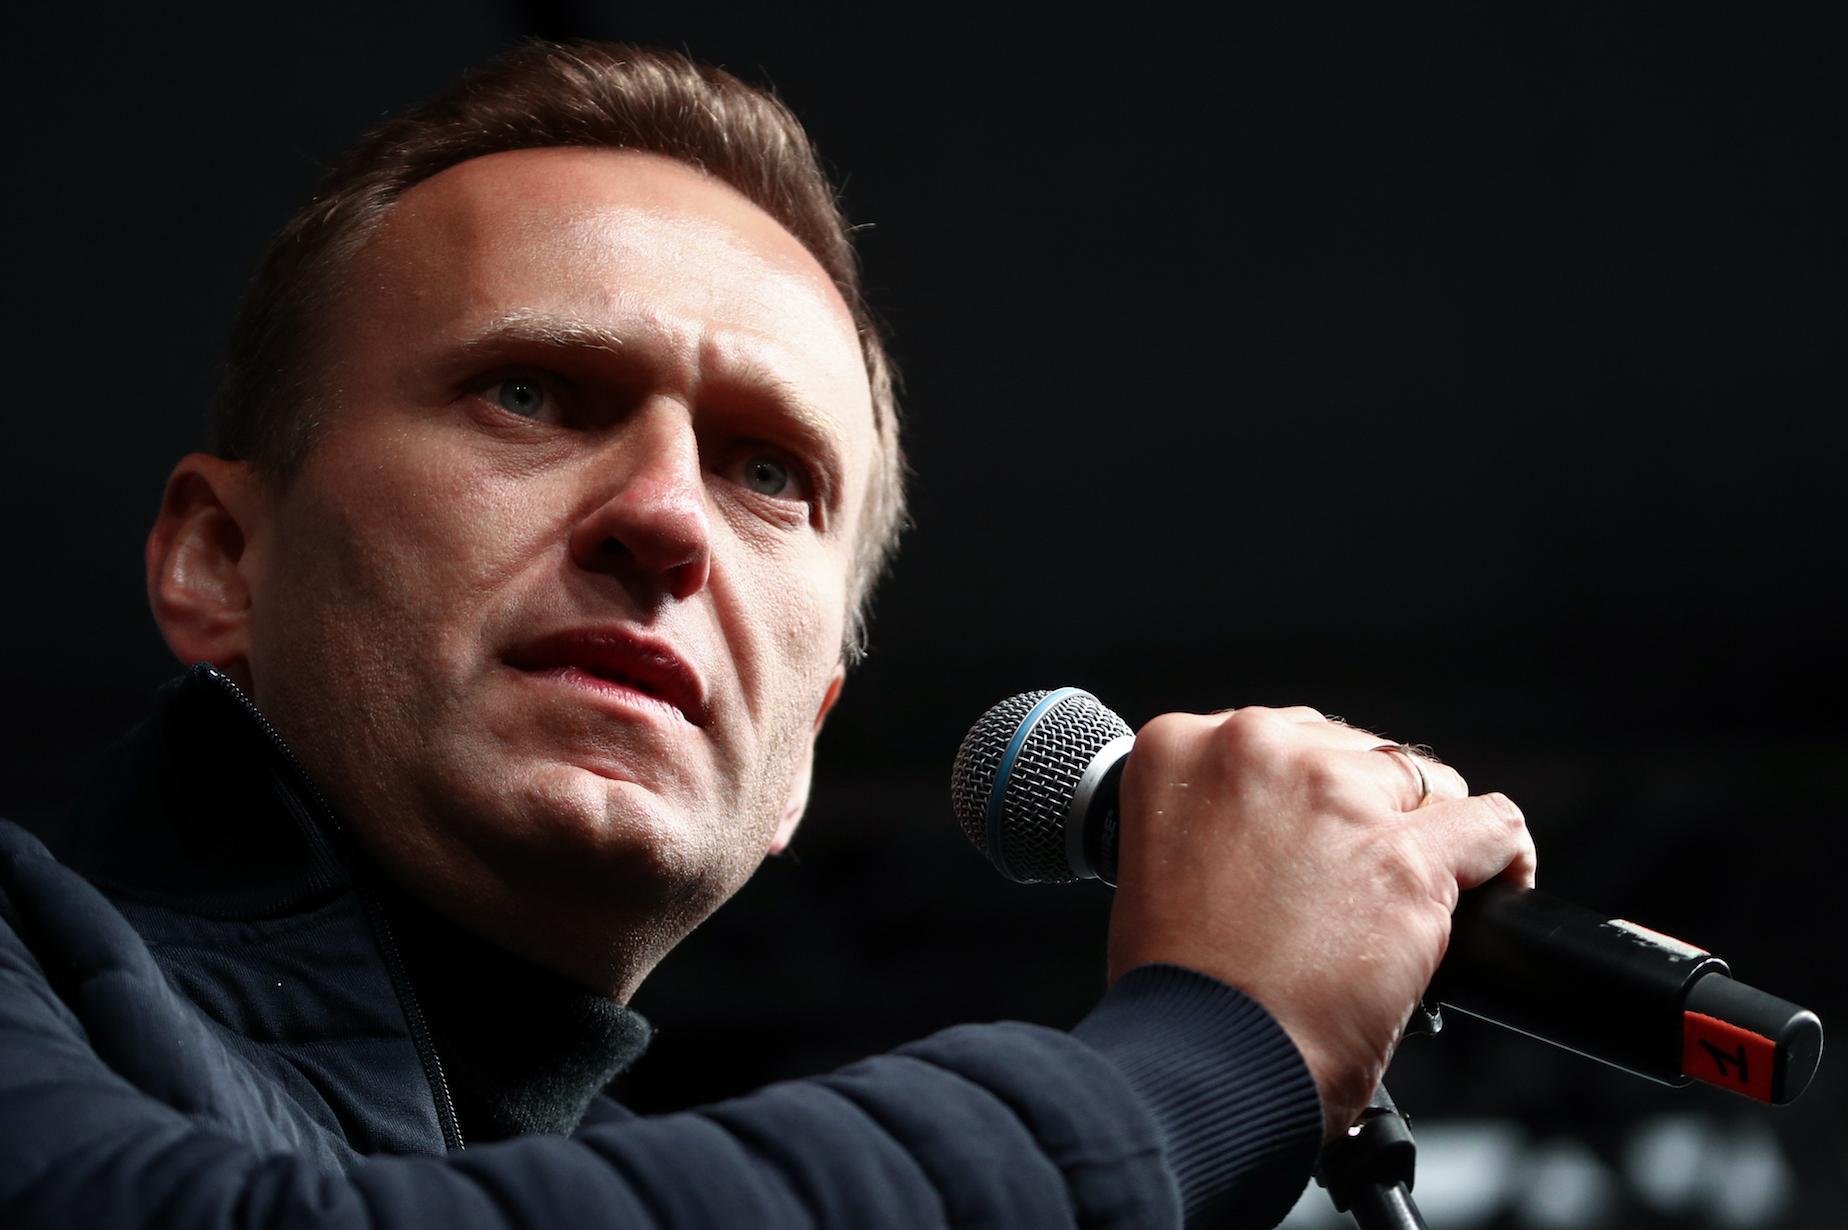 Московский реаниматолог — об окружении Навального в Омске: Разыгрывало информационную вакханалию